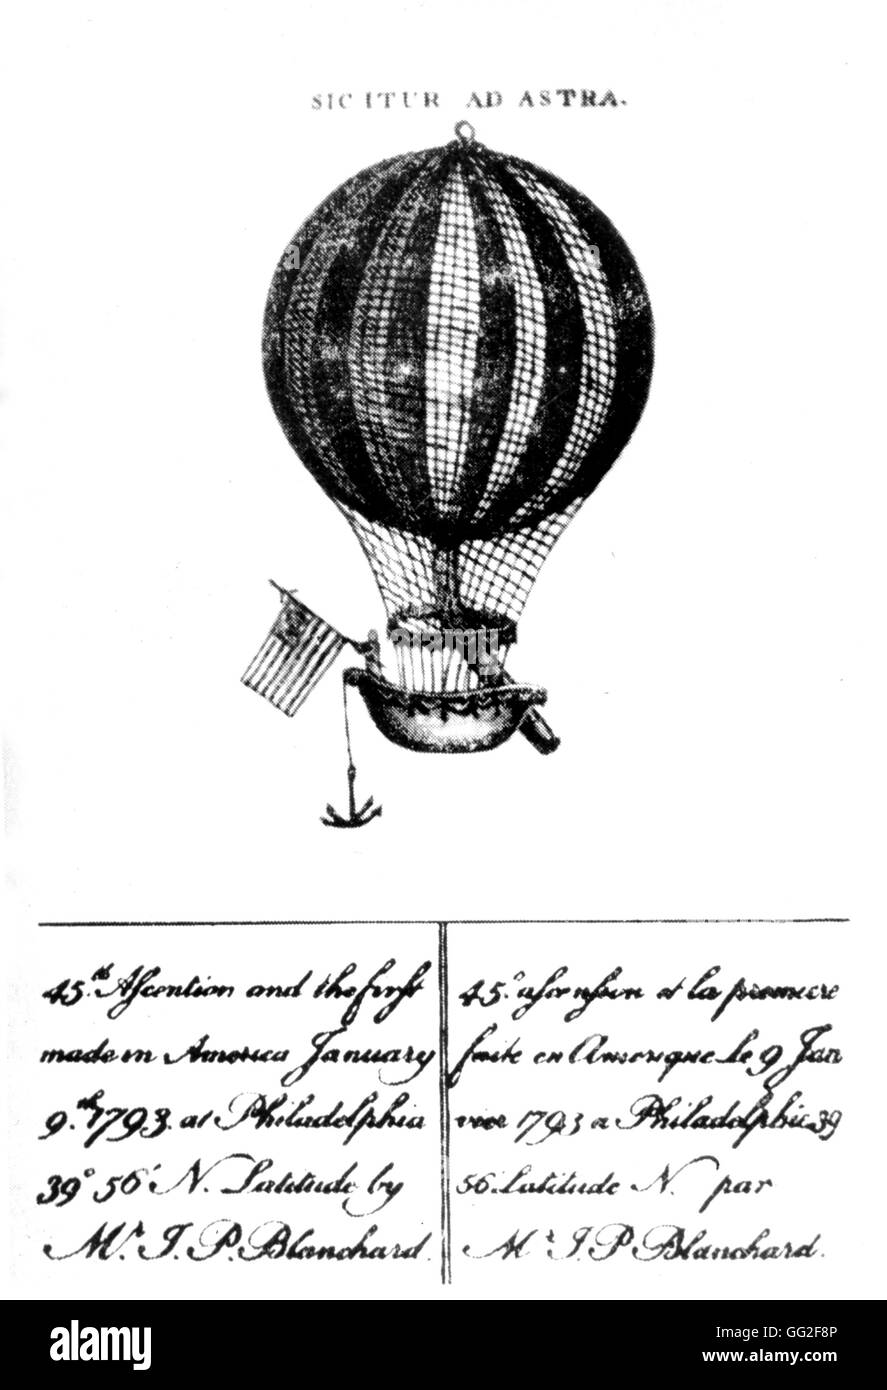 Flug in einem Luftschiff in Philadelphia 1793 Vereinigte Staaten Stockfoto